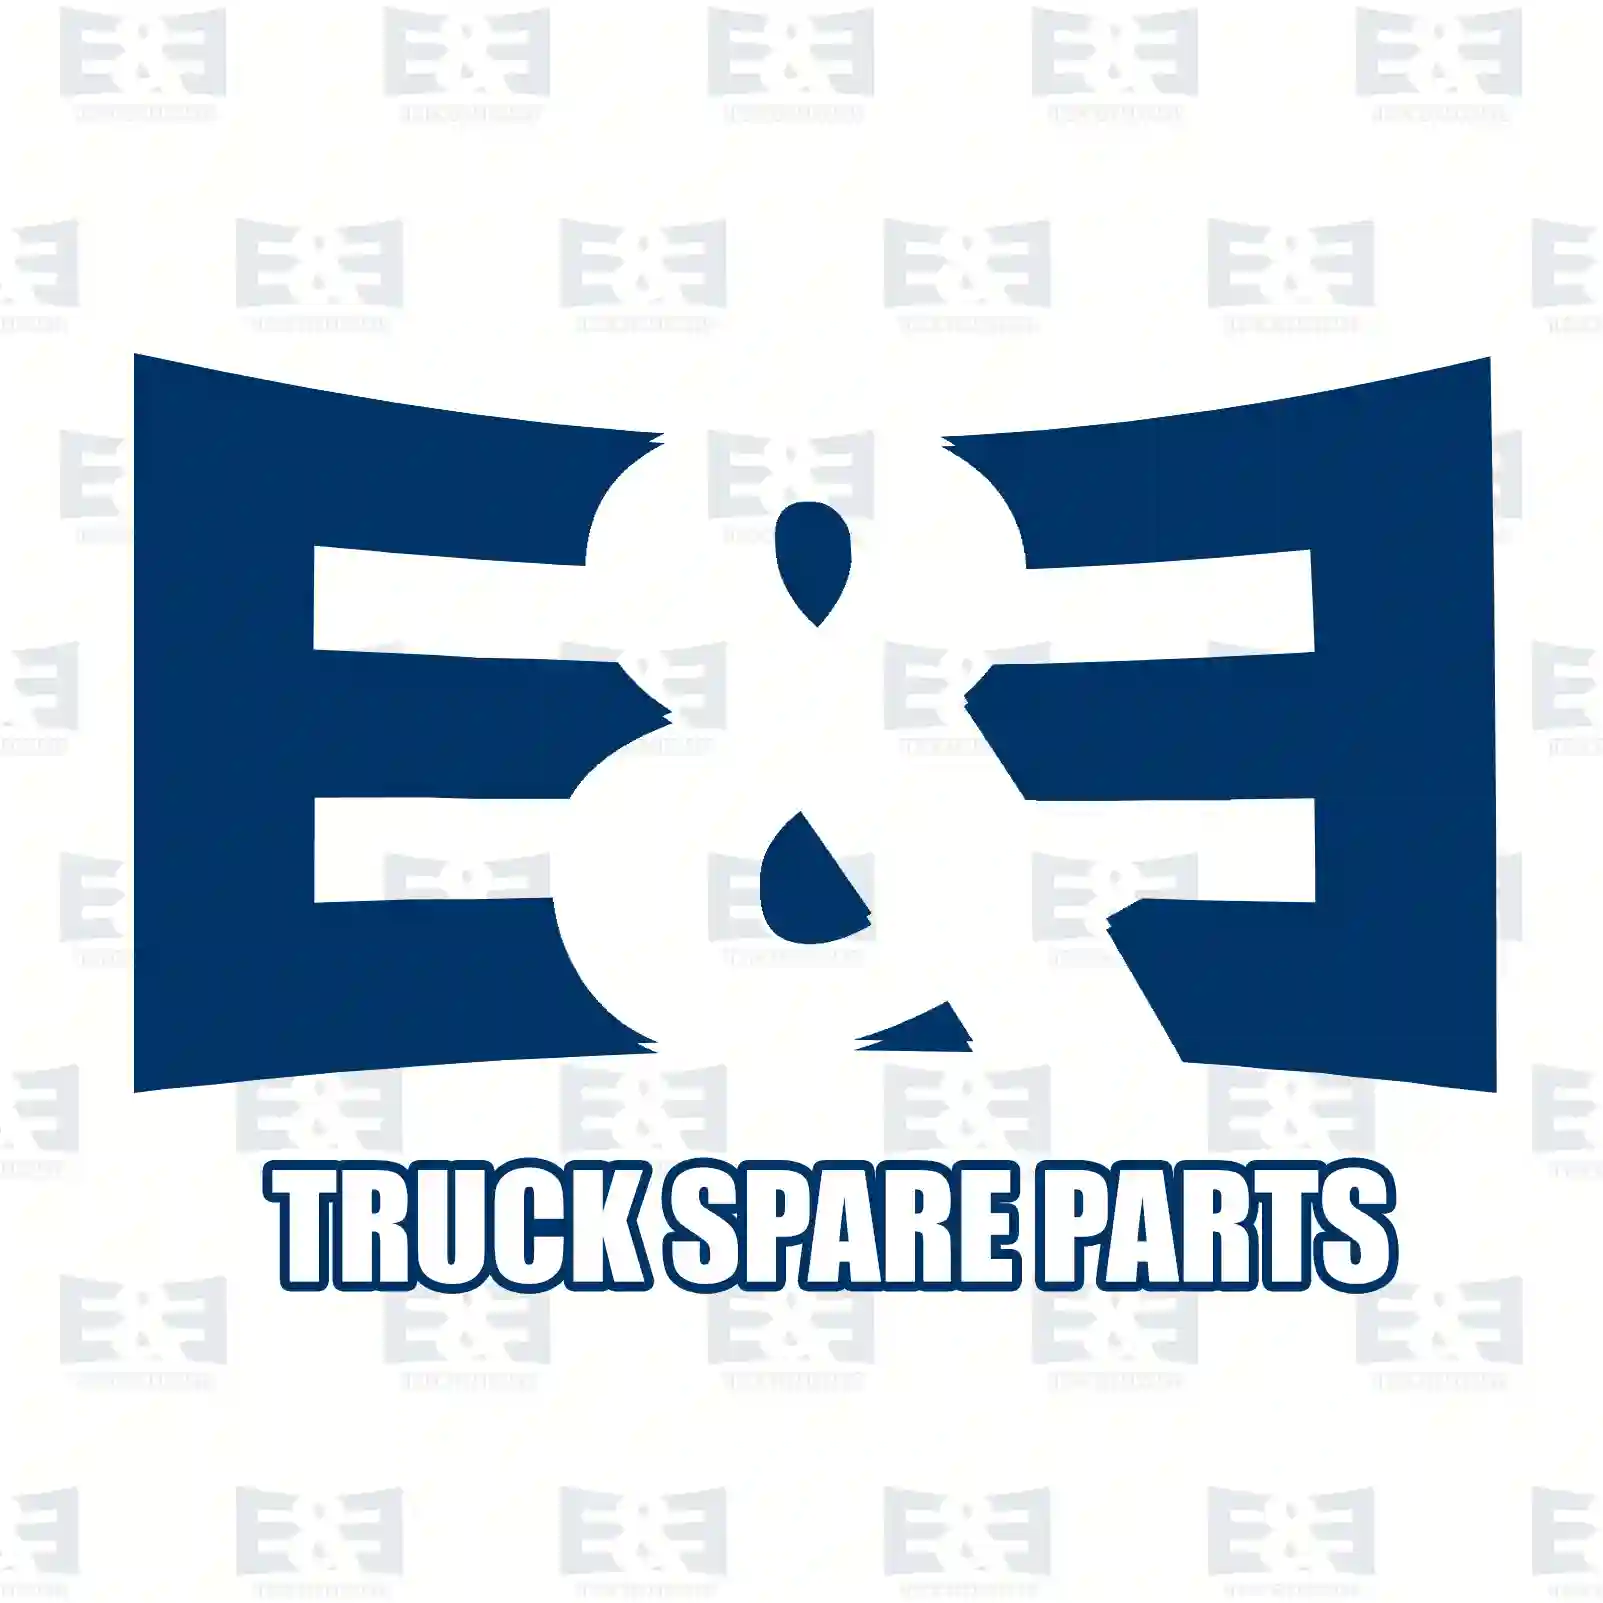 Fan Fan with clutch, EE No 2E2203957 ,  oem no:074121302, 074121302A, 074121302B, 074121302C E&E Truck Spare Parts | Truck Spare Parts, Auotomotive Spare Parts